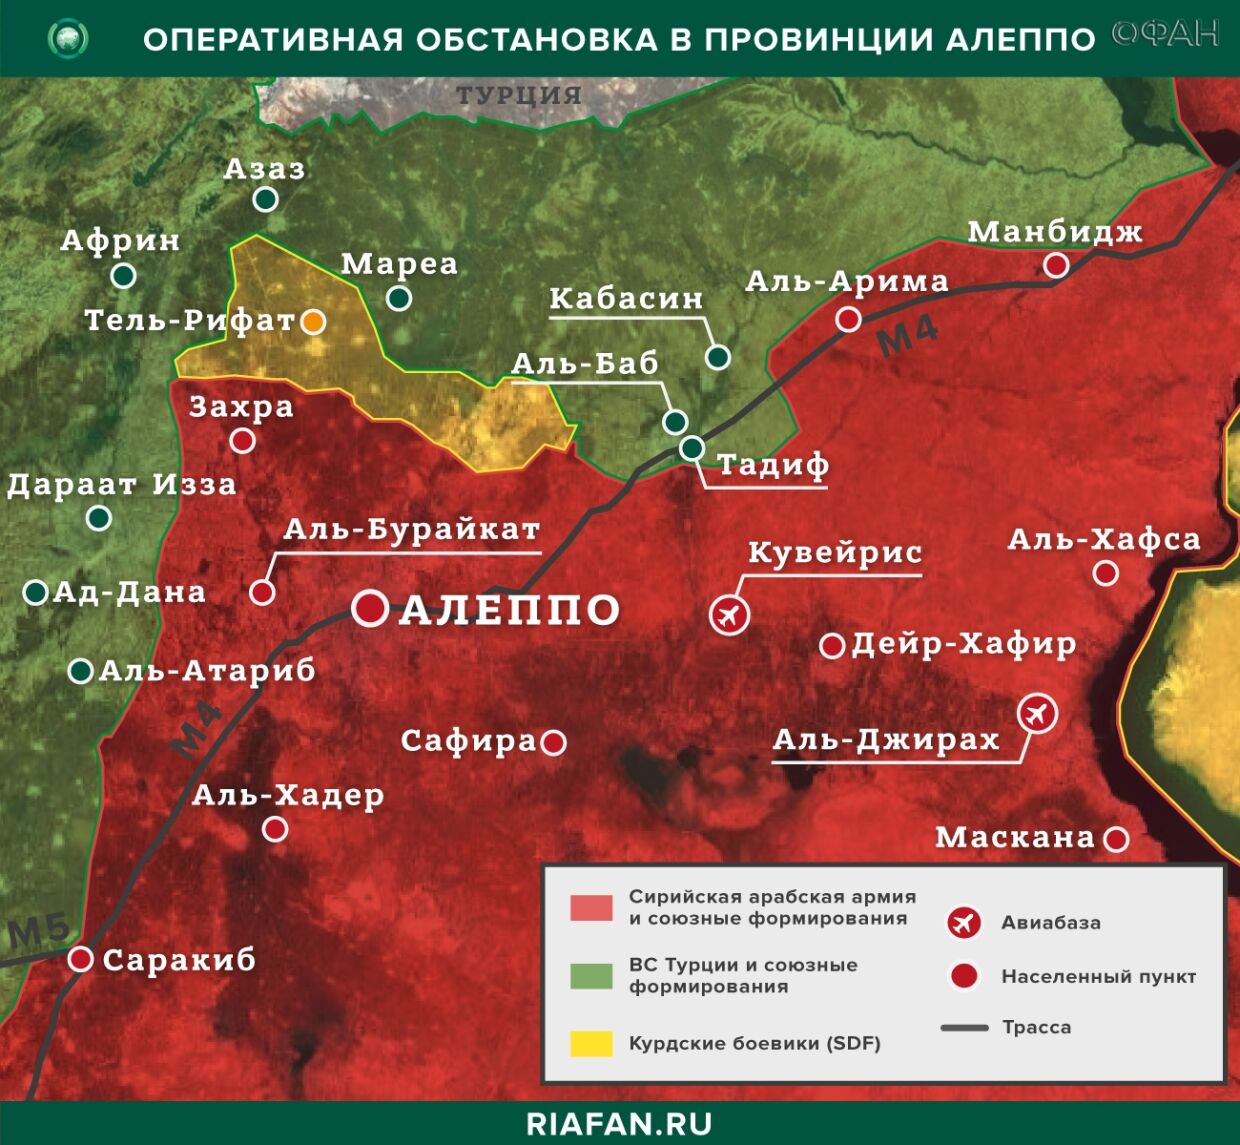 Resultados diarios de Siria para 21 Mayo 06.00: жители пострадали во время стычек союзников Турции в Африне, САА развернула конвой США в Хасаке